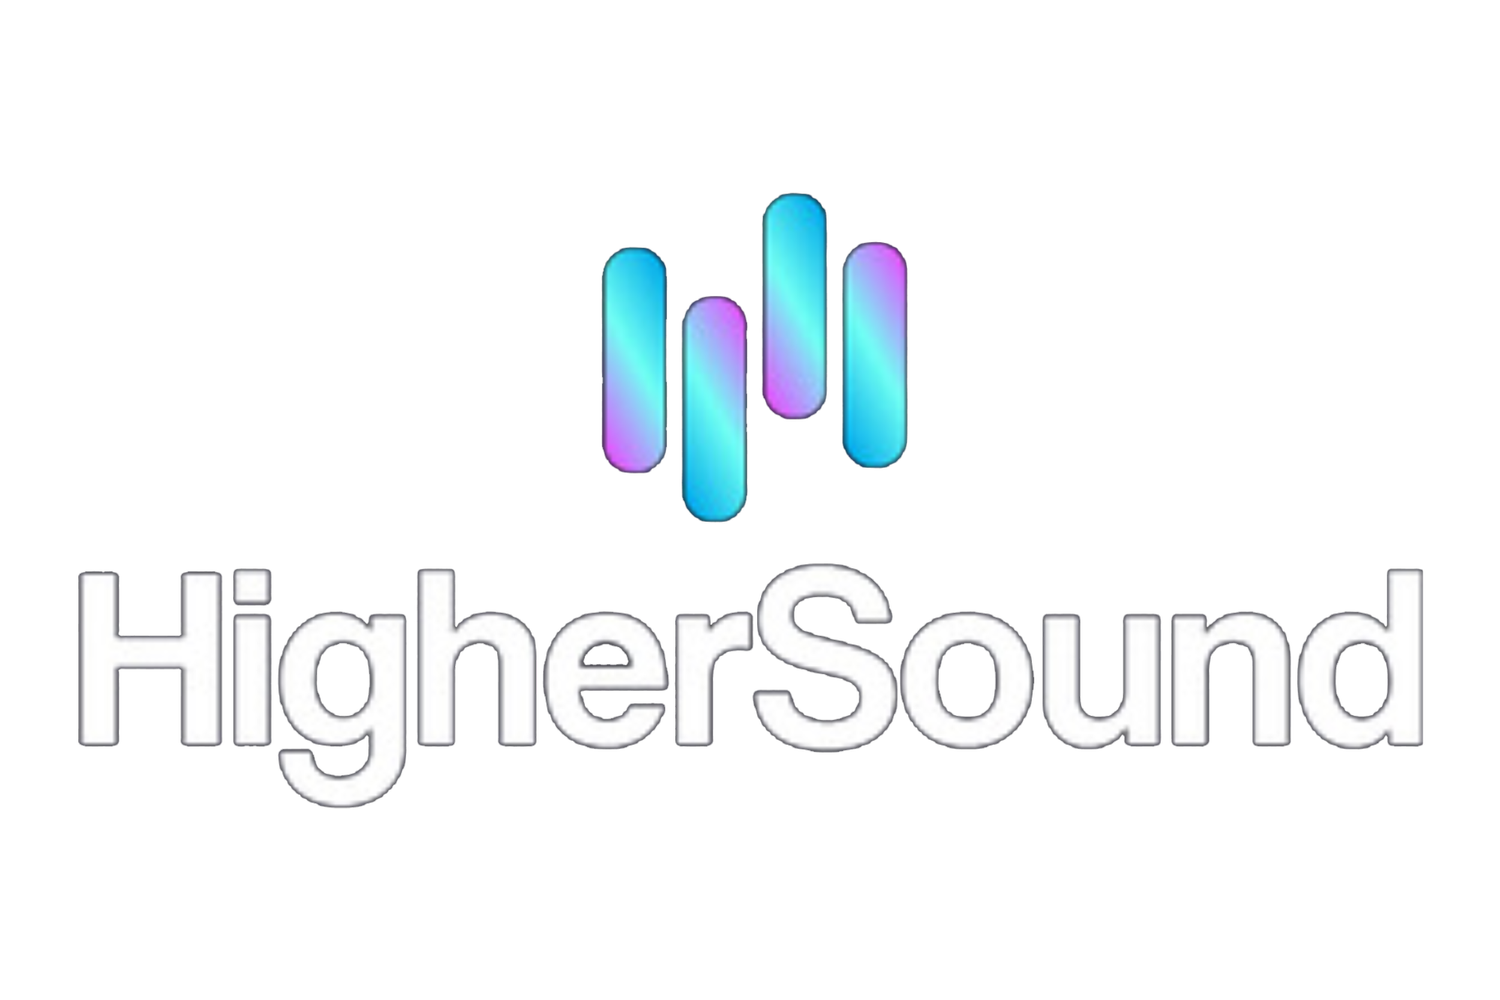 Higher Sound